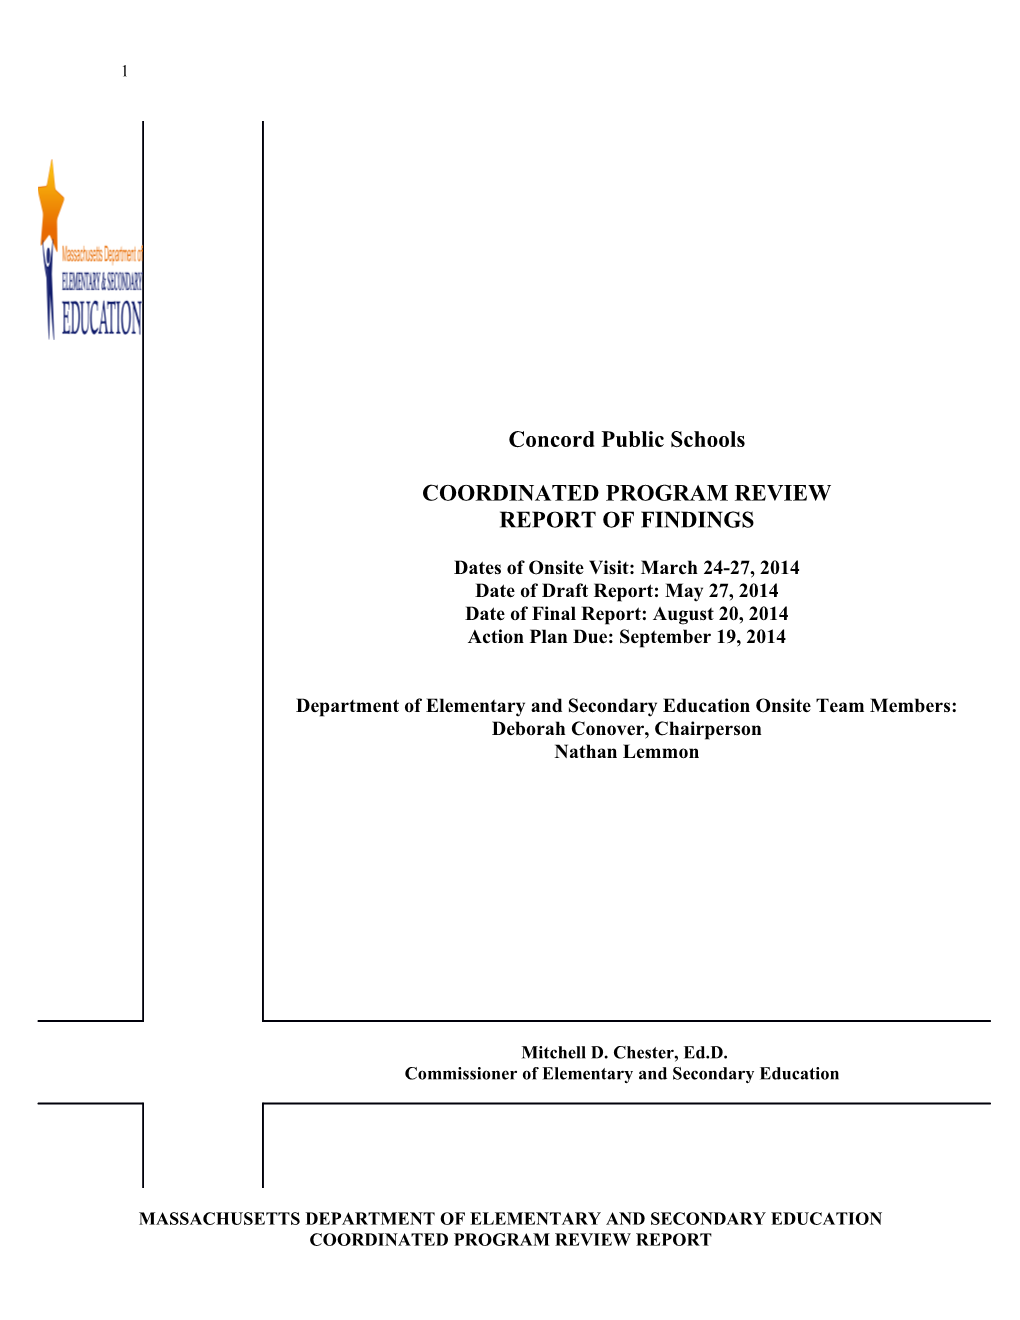 Concord Public Schools CPR Final Report 2014